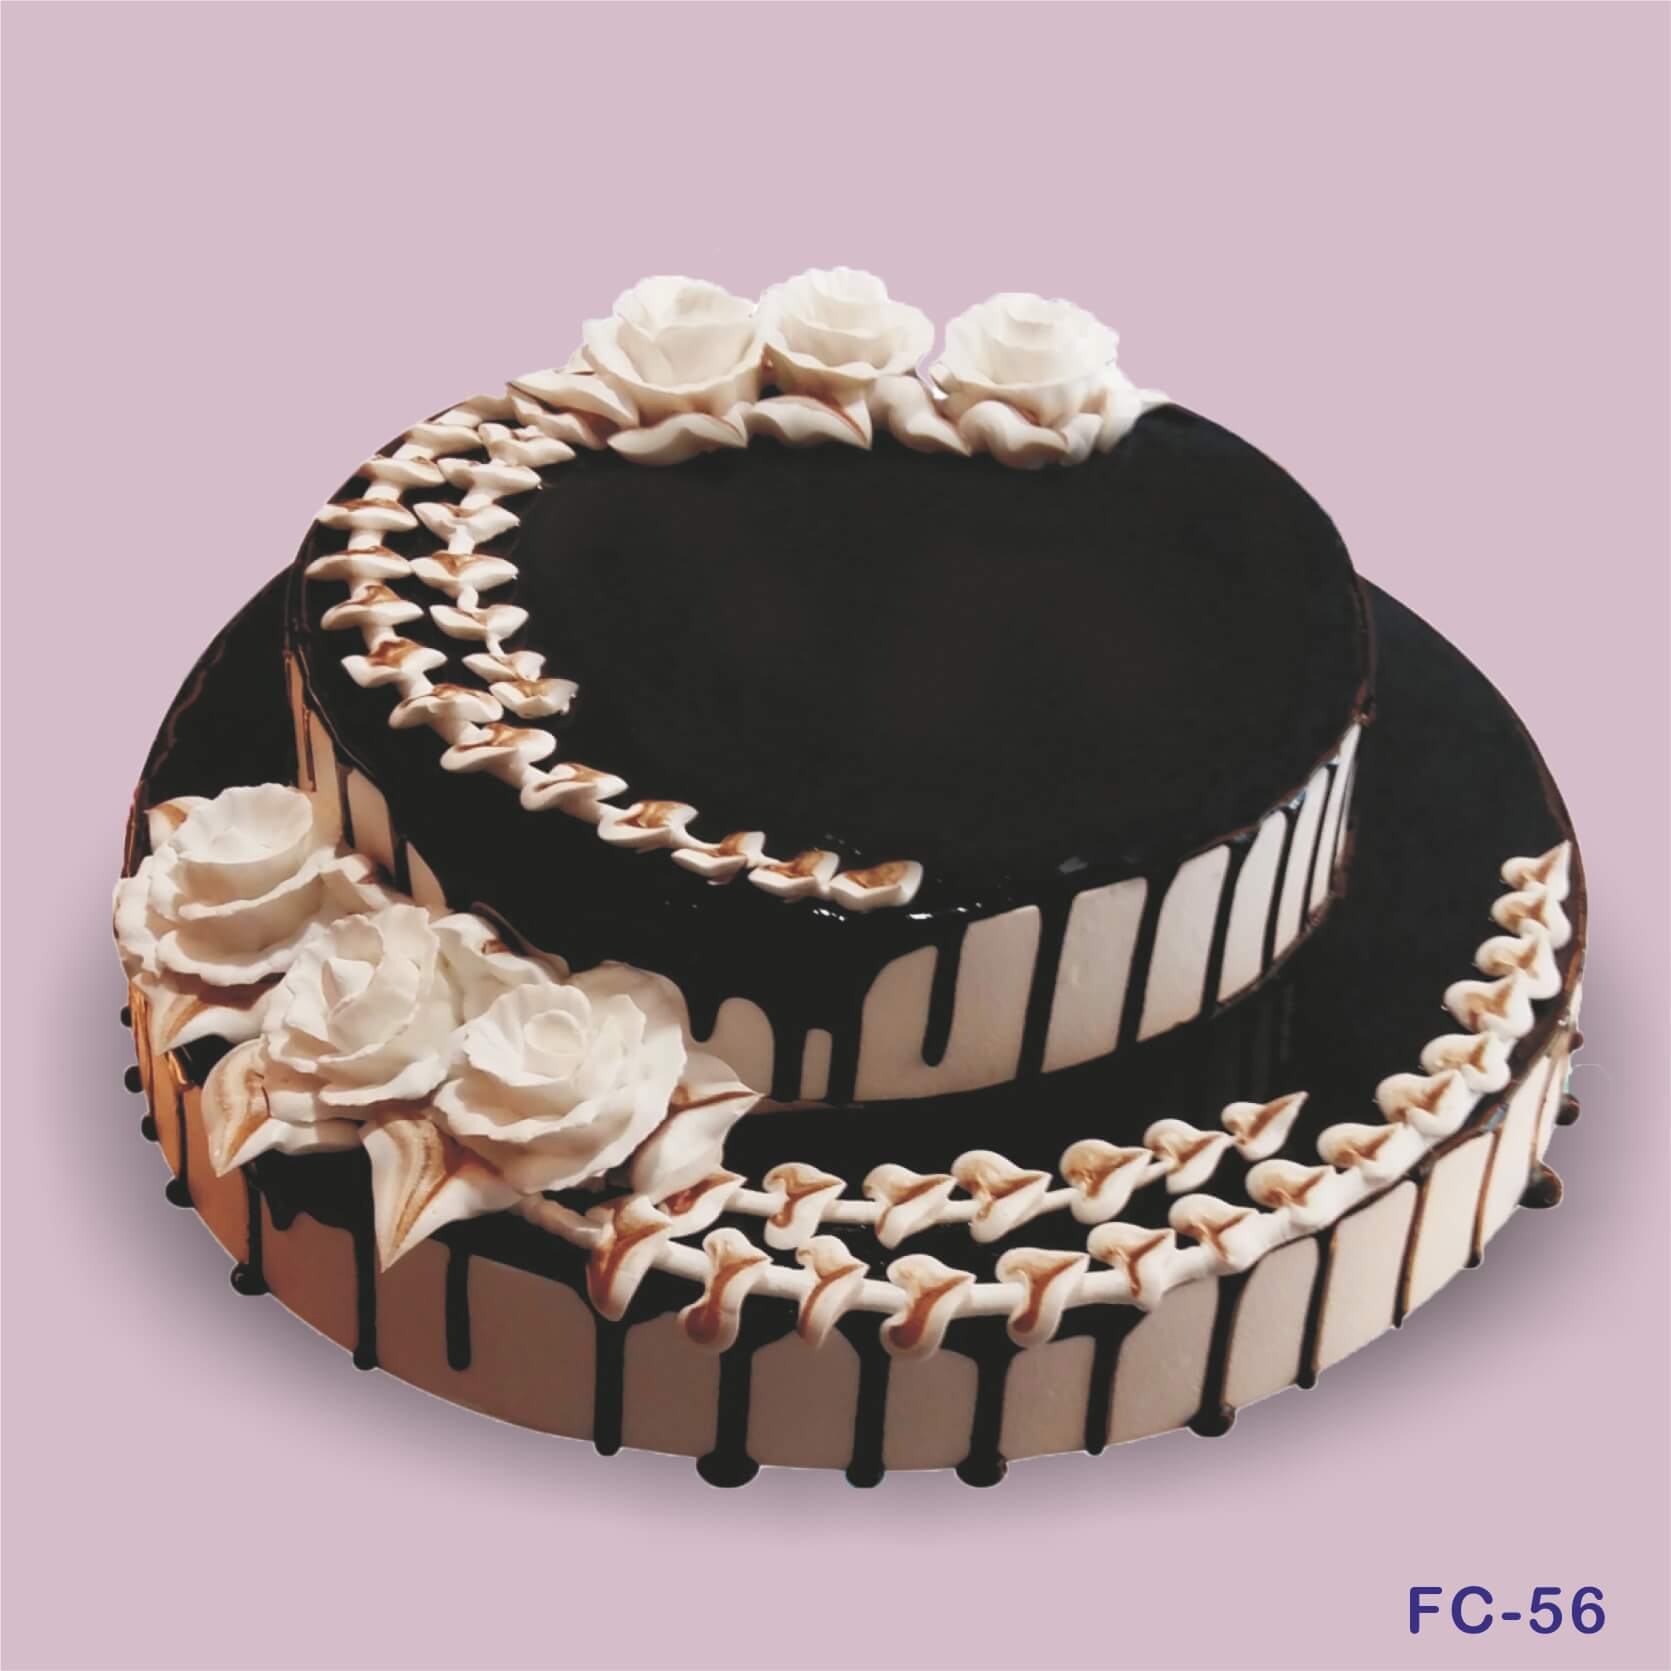 Fancy Cakes By Lauren | Wedding Cake Bakers in Dallas TX